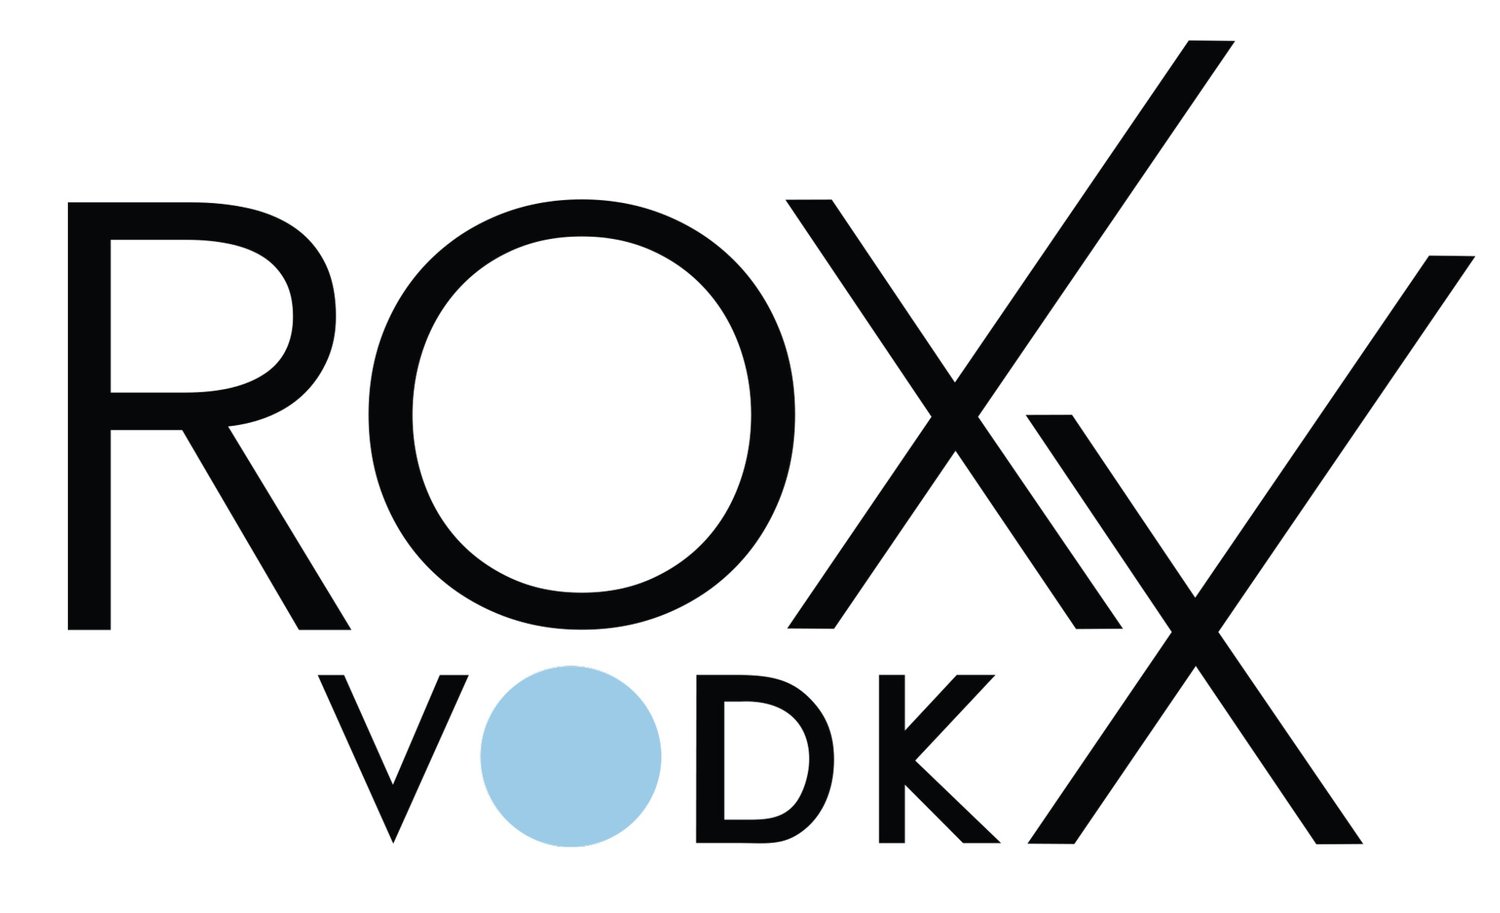 ROXX VODKA